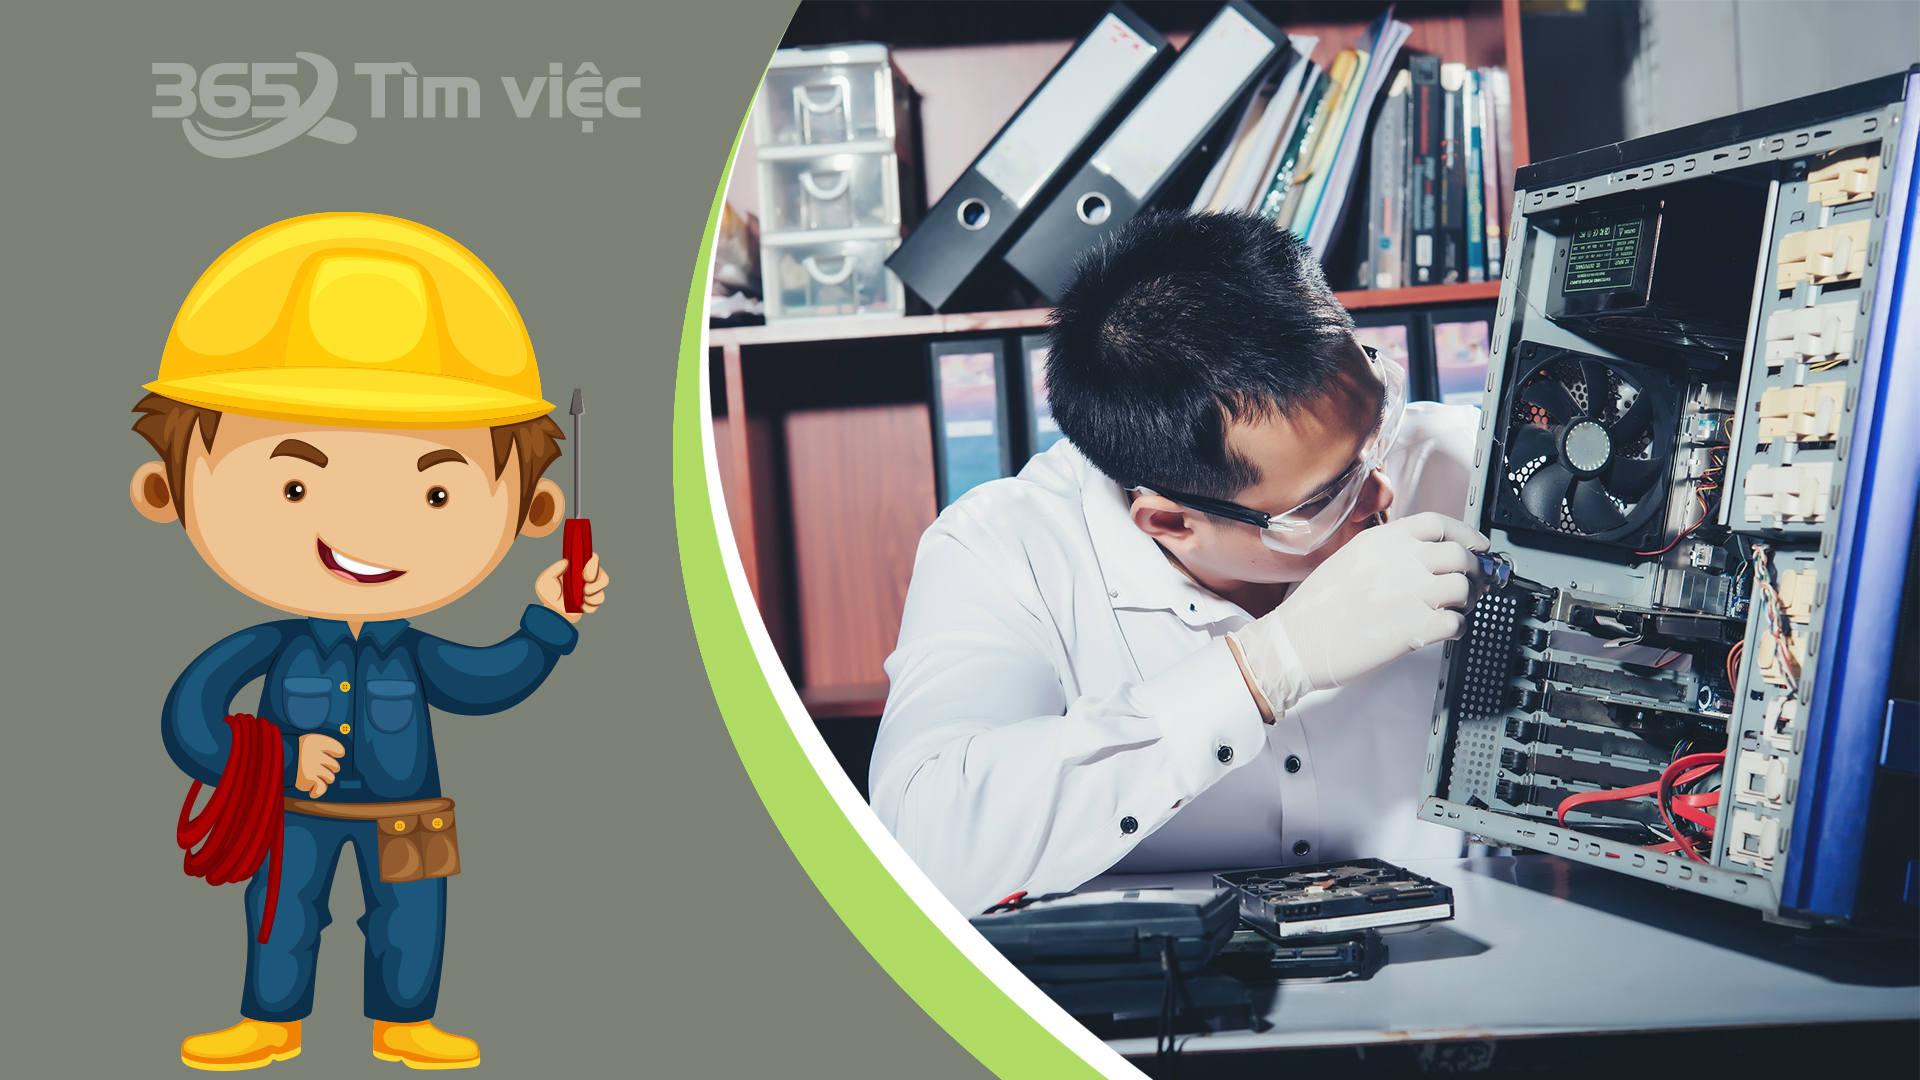 Tìm việc làm Lao động phổ thông tại Nghệ An nhanh chóng và hiệu quả nhất ở đâu?